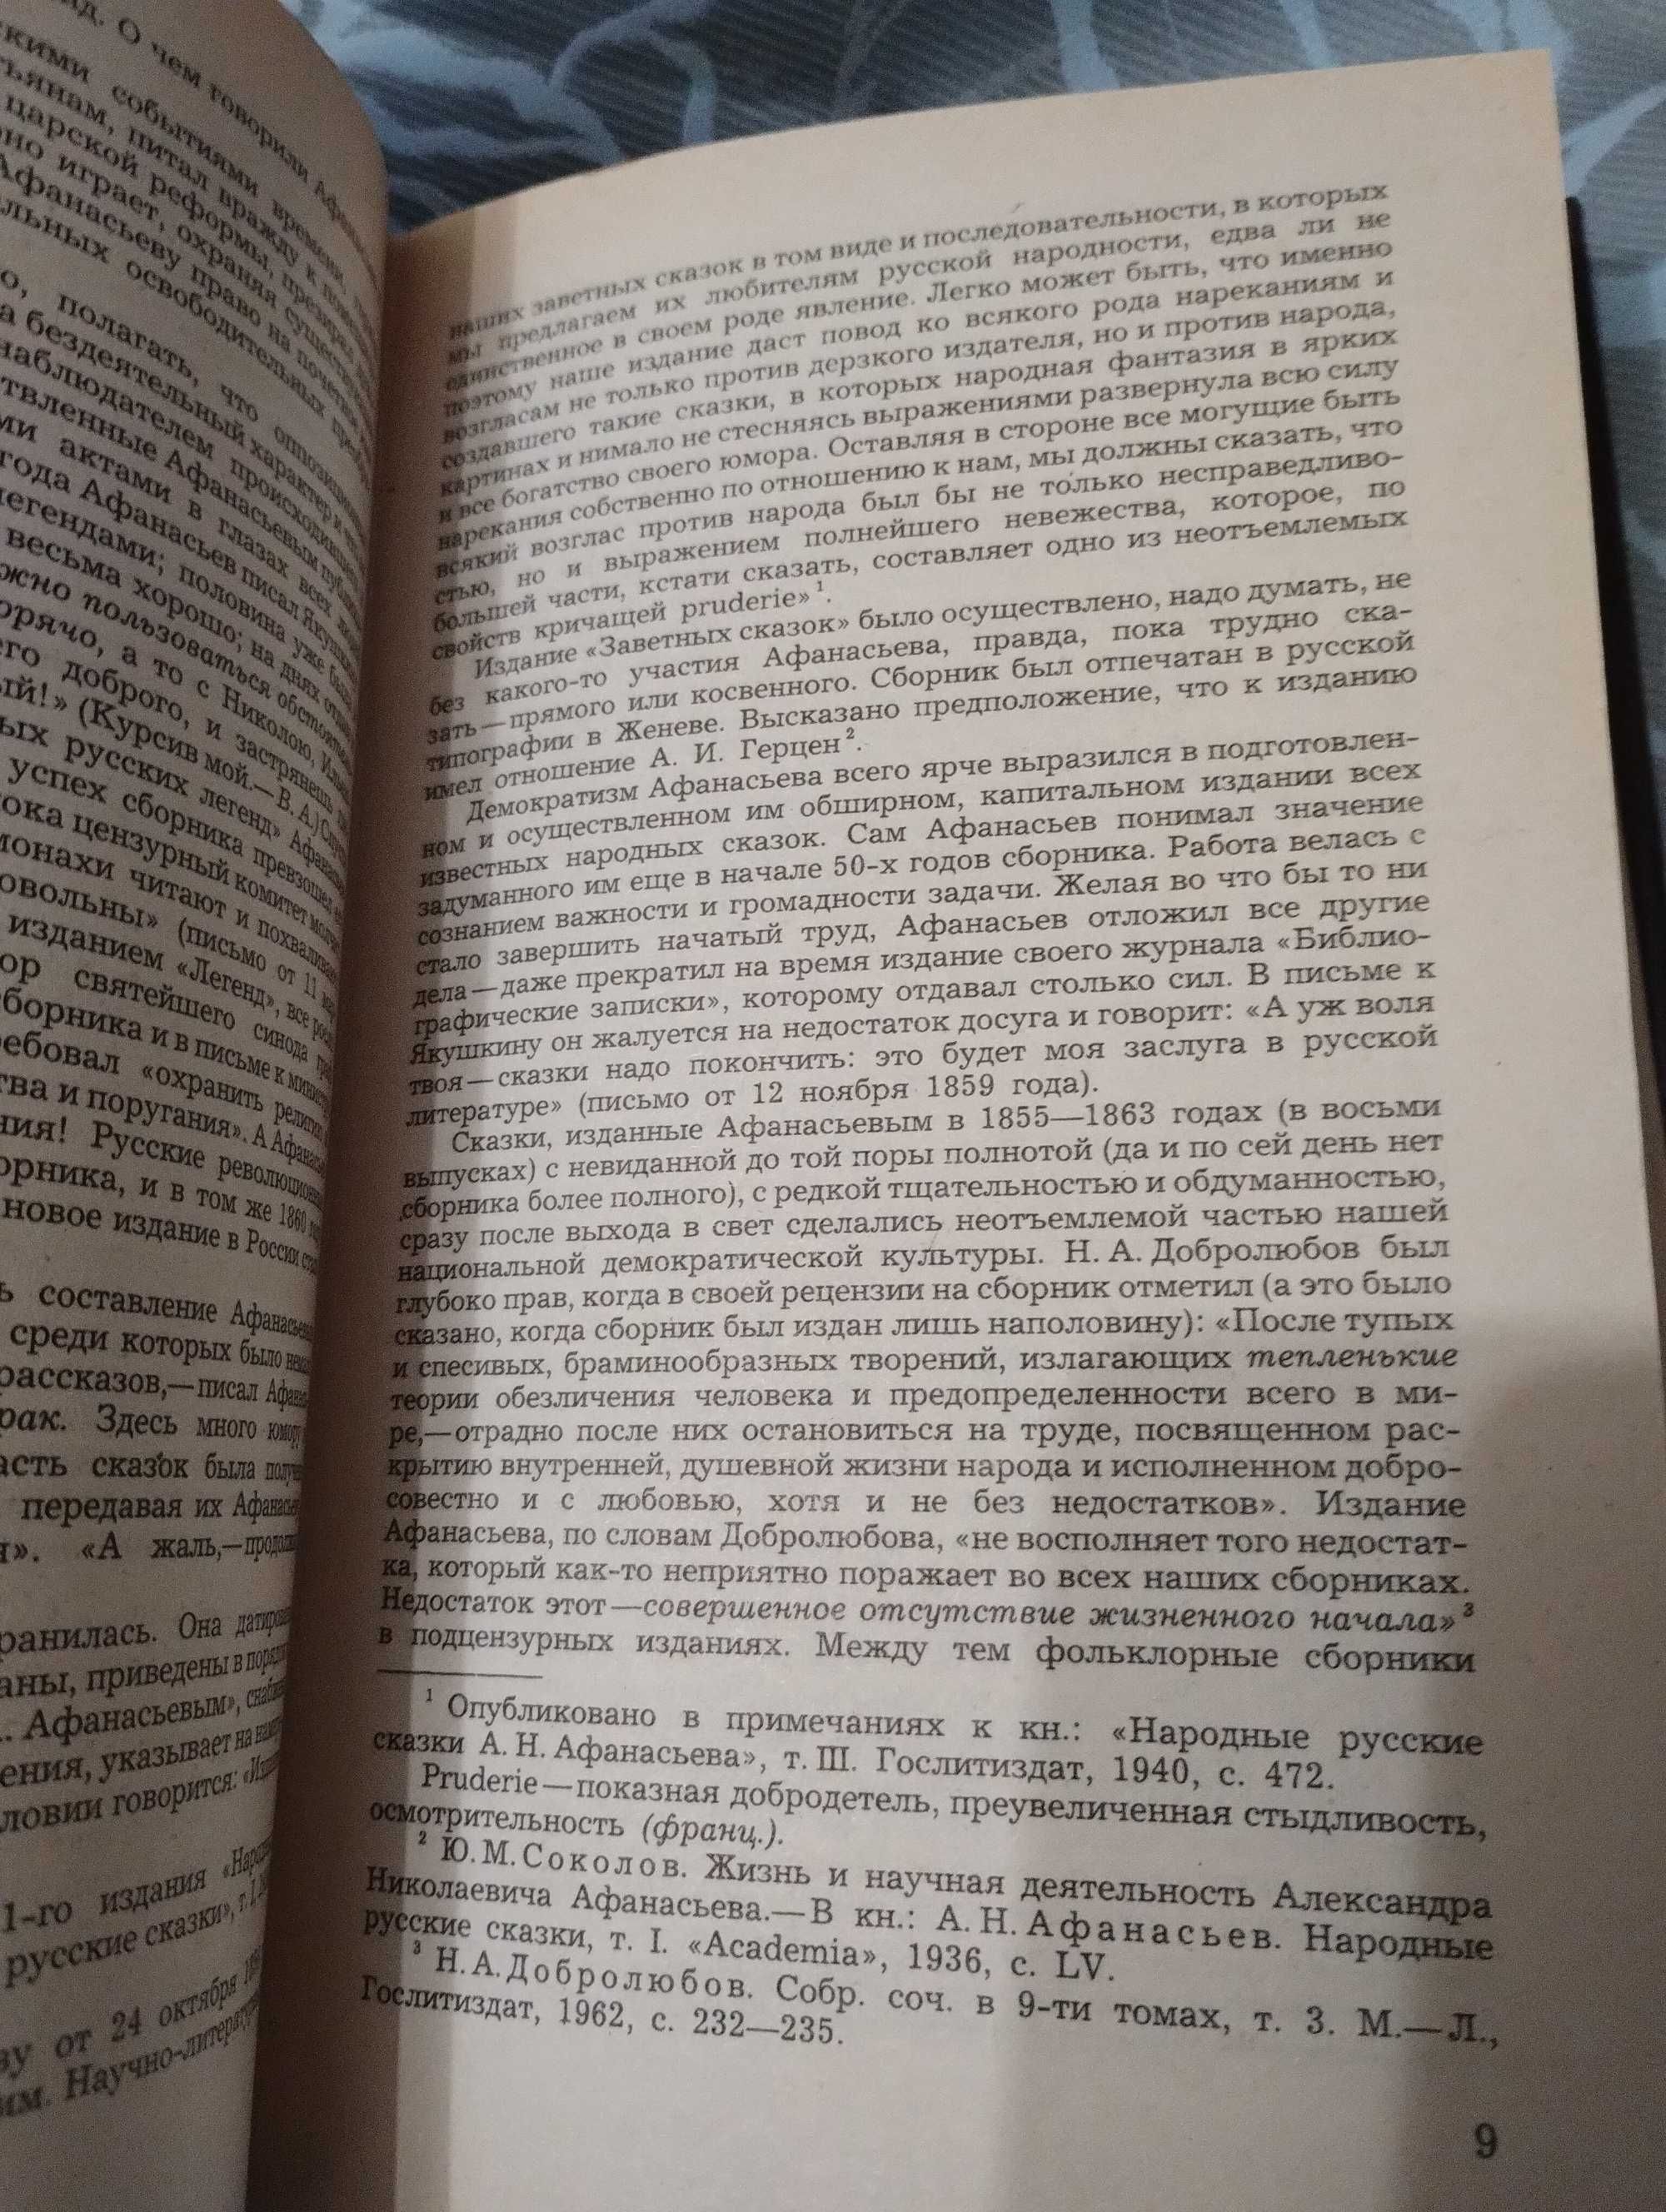 Народные Русские Сказки Из зборн. Афанасьева правда 1982 год.